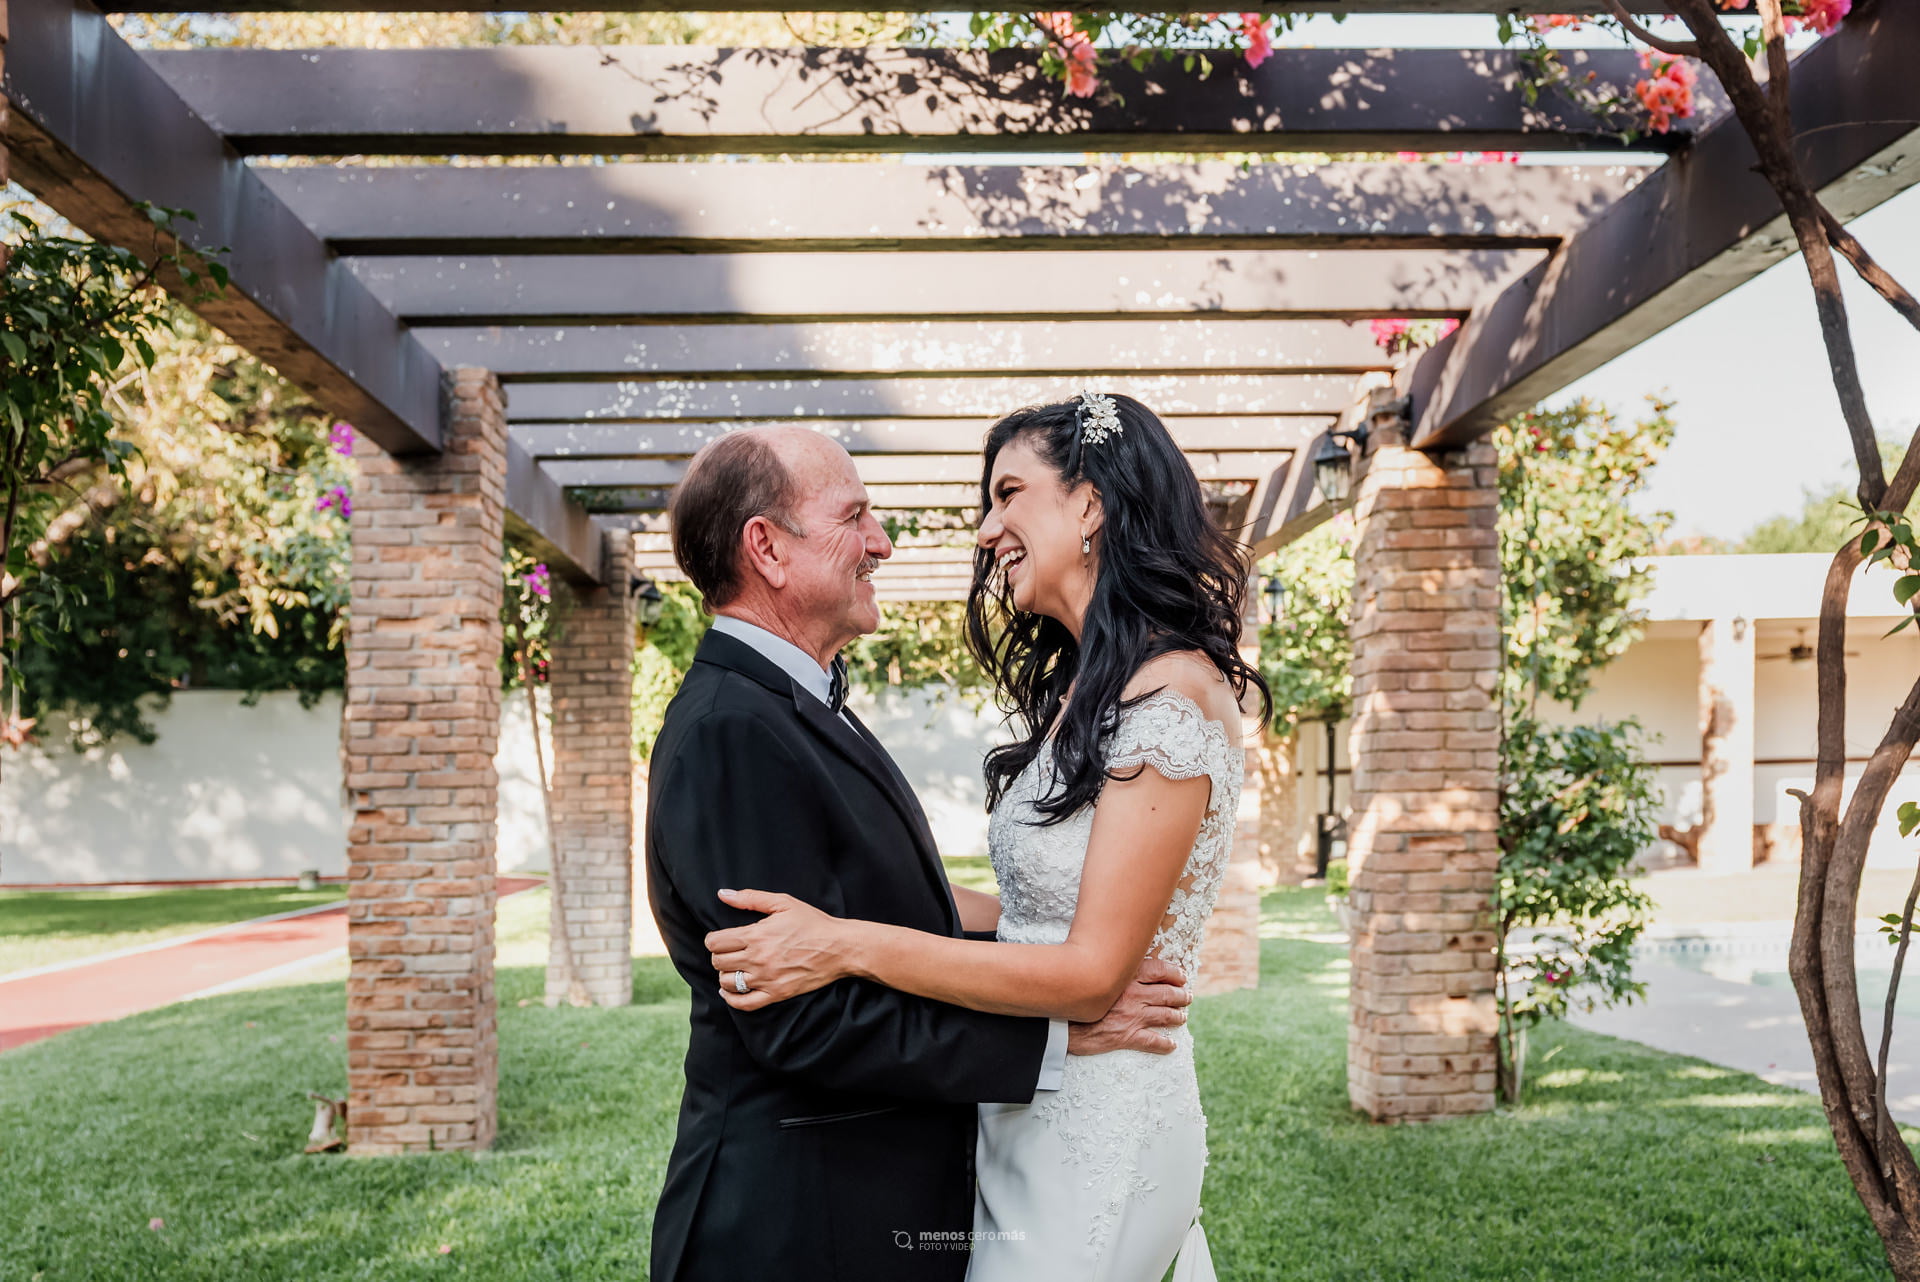 Alejandra y Chuy, radiantes de felicidad en su foto formal de boda, se abrazan frente a frente en un jardín en San Pedro Garza García al fondo. La ceremonia religiosa se realizo en Parroquia San Agustín.